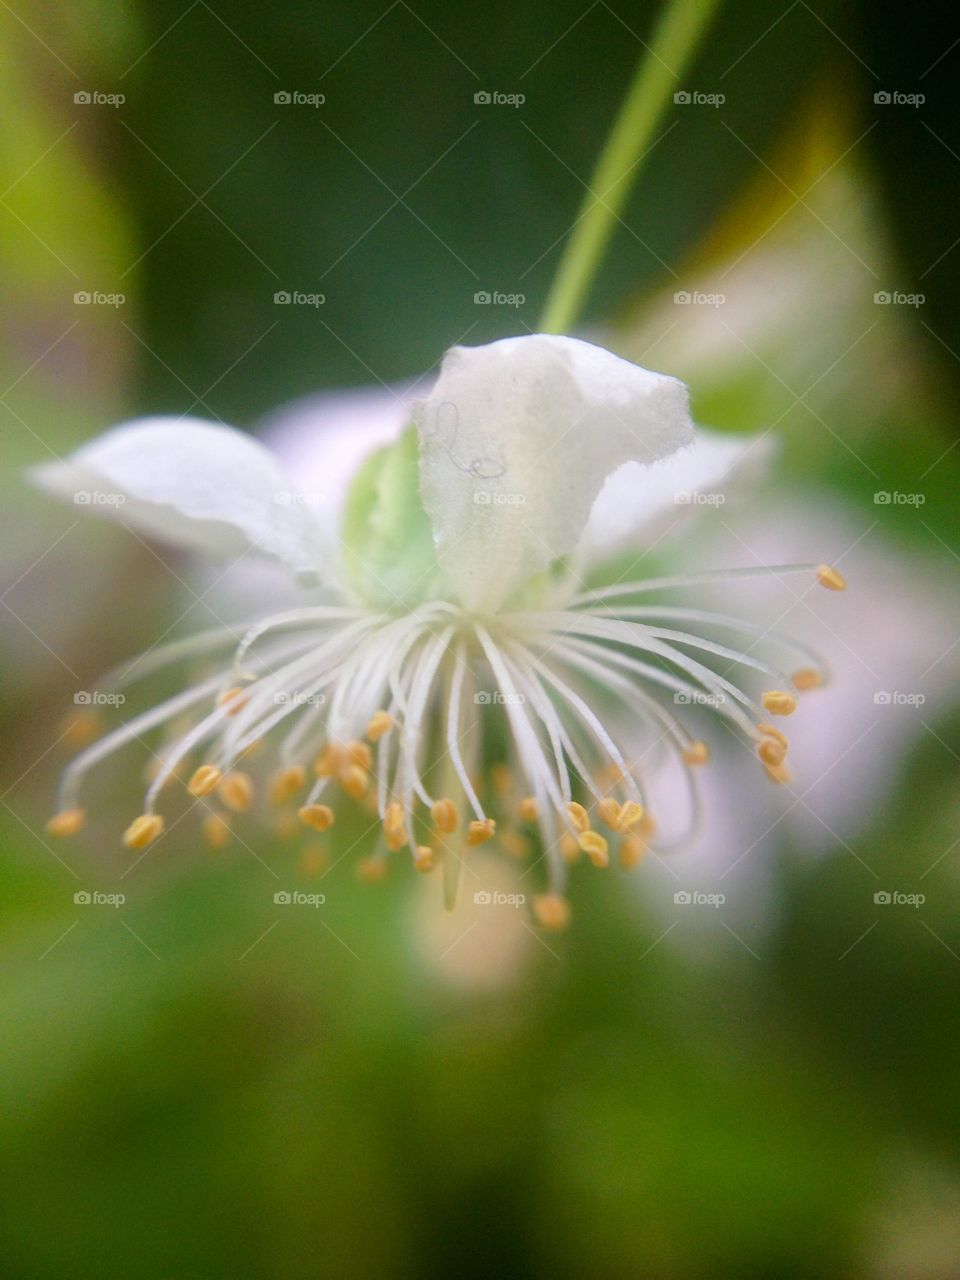 Mini flower